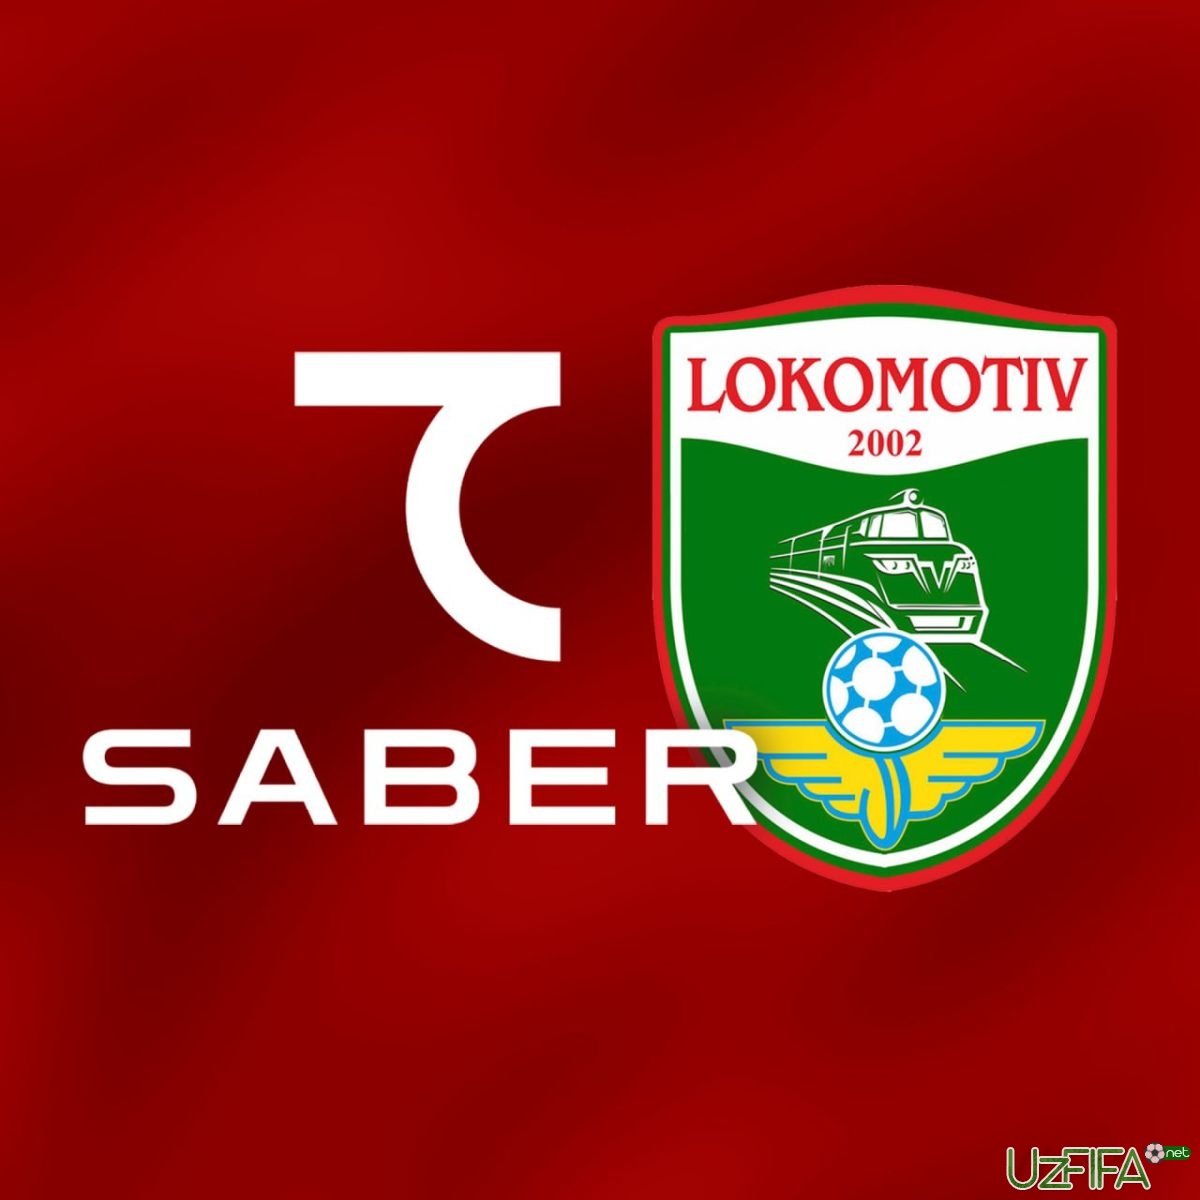                           "Lokomotiv" 7SABER bilan hamkorlikni yo'lga qo'ydi		- uzfifa.net.